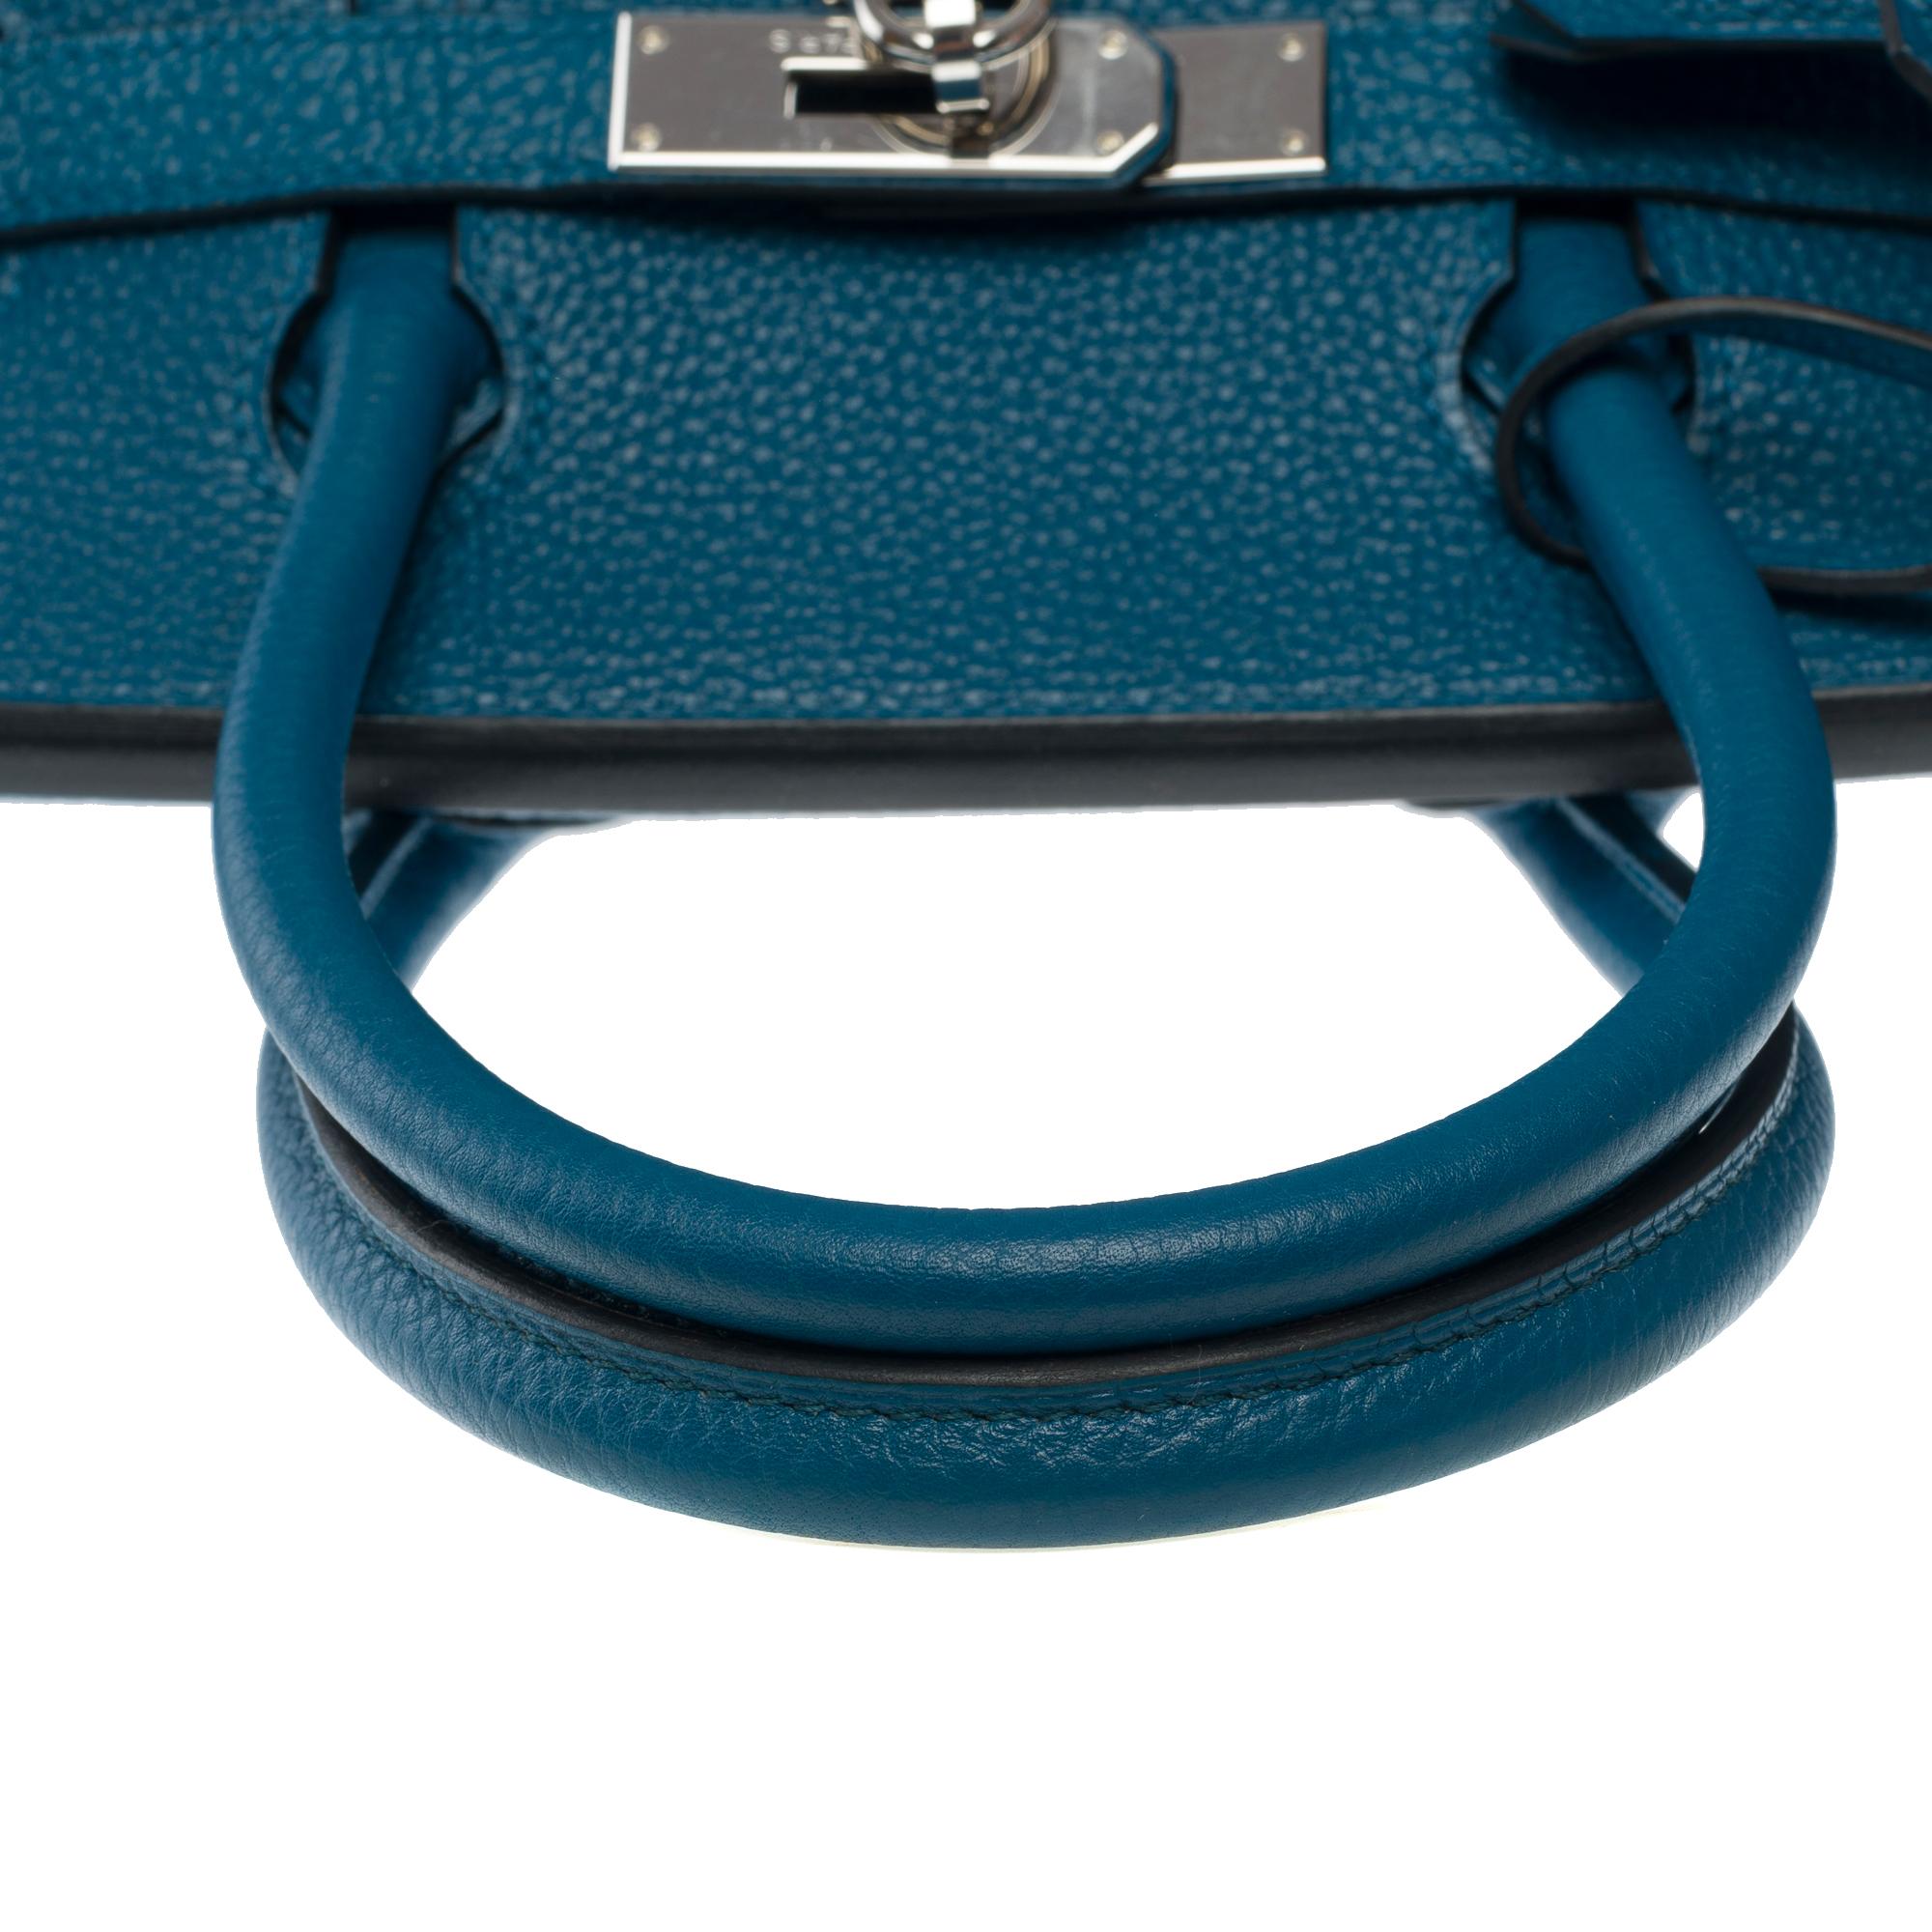 Stunning Hermes Birkin 30 handbag in Blue Togo leather, SHW For Sale 6